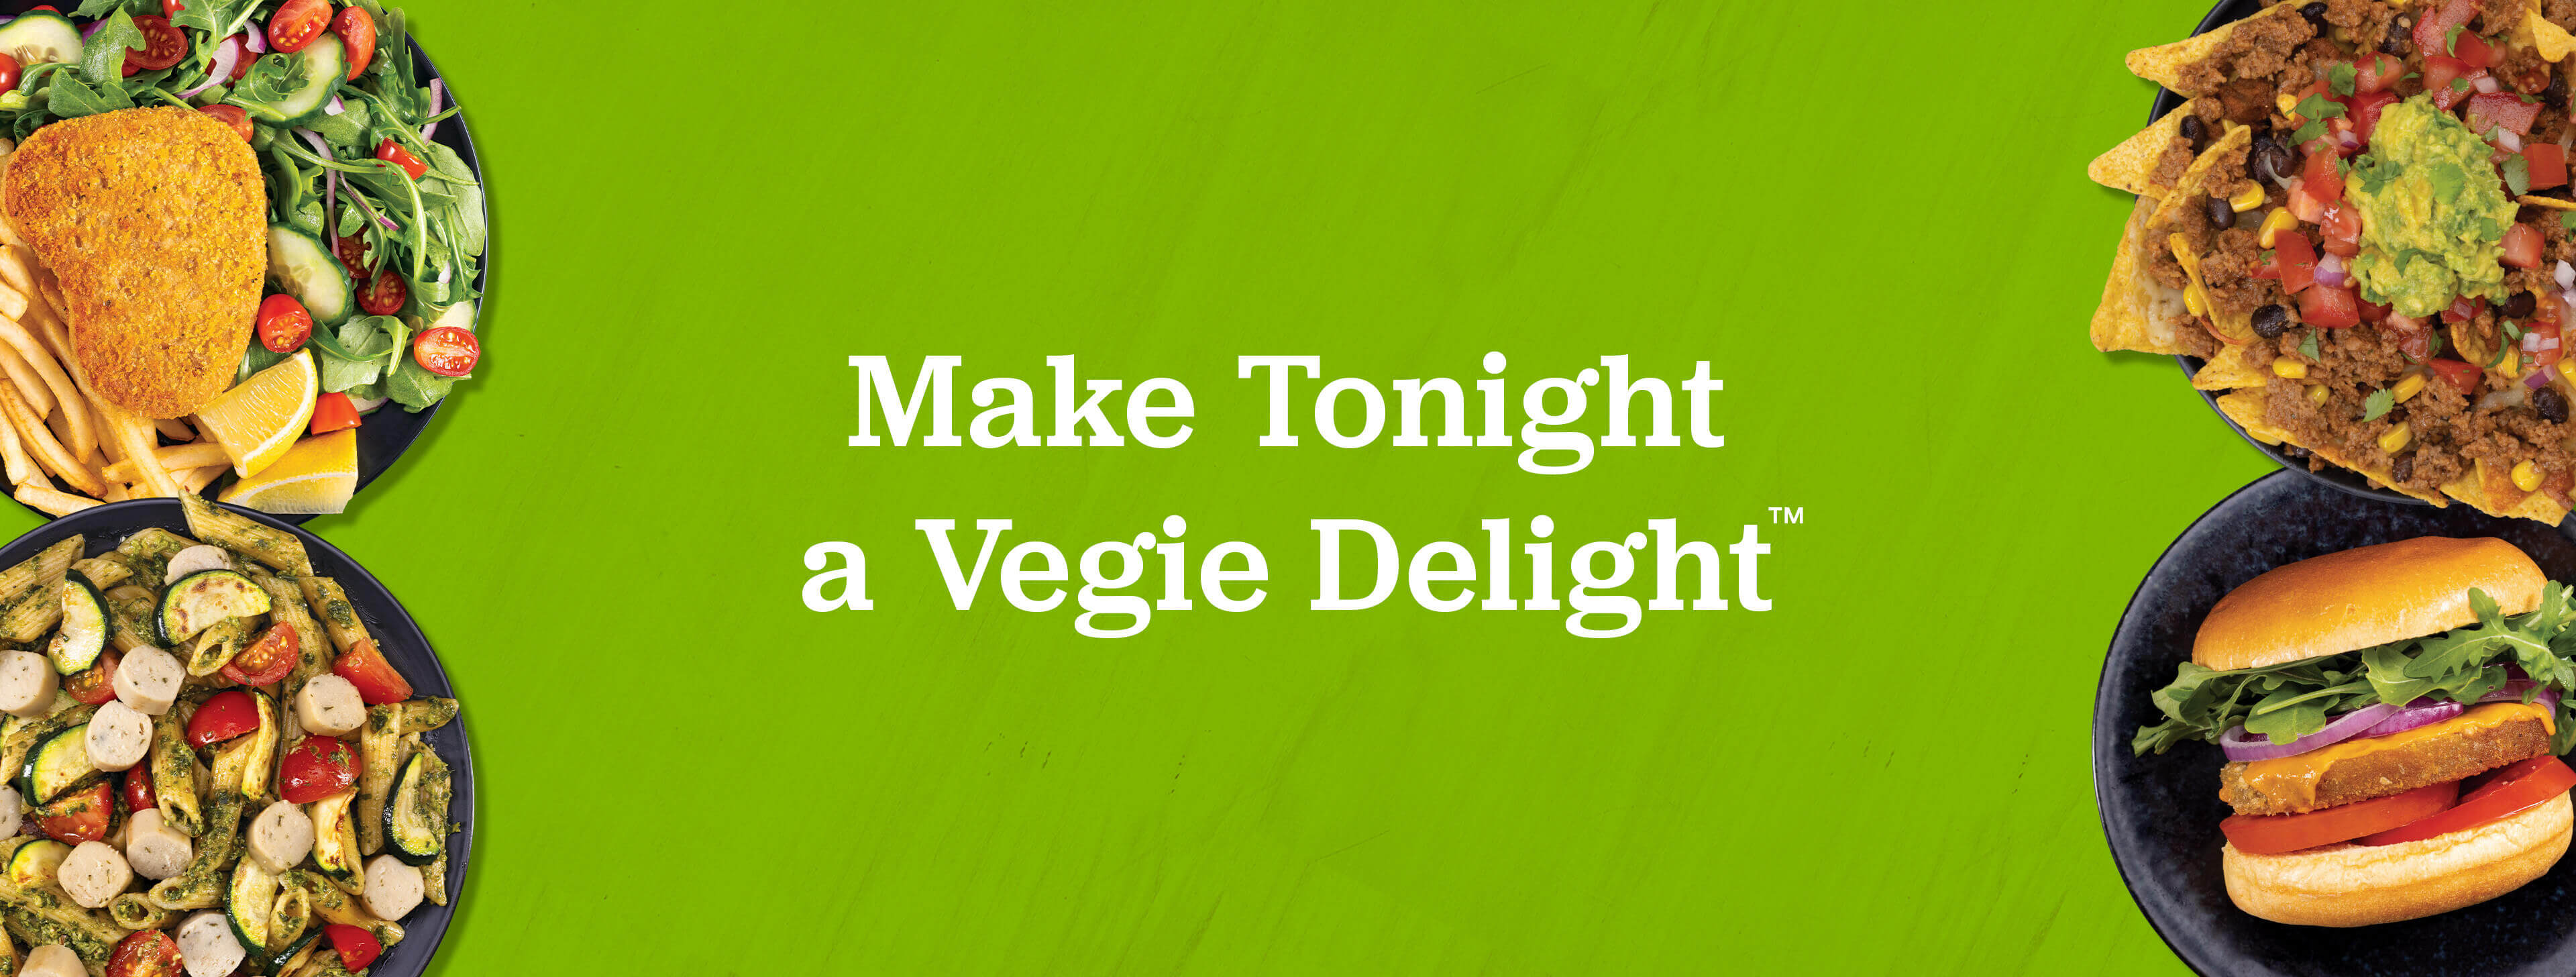 Make Tonight a Vegie Delight